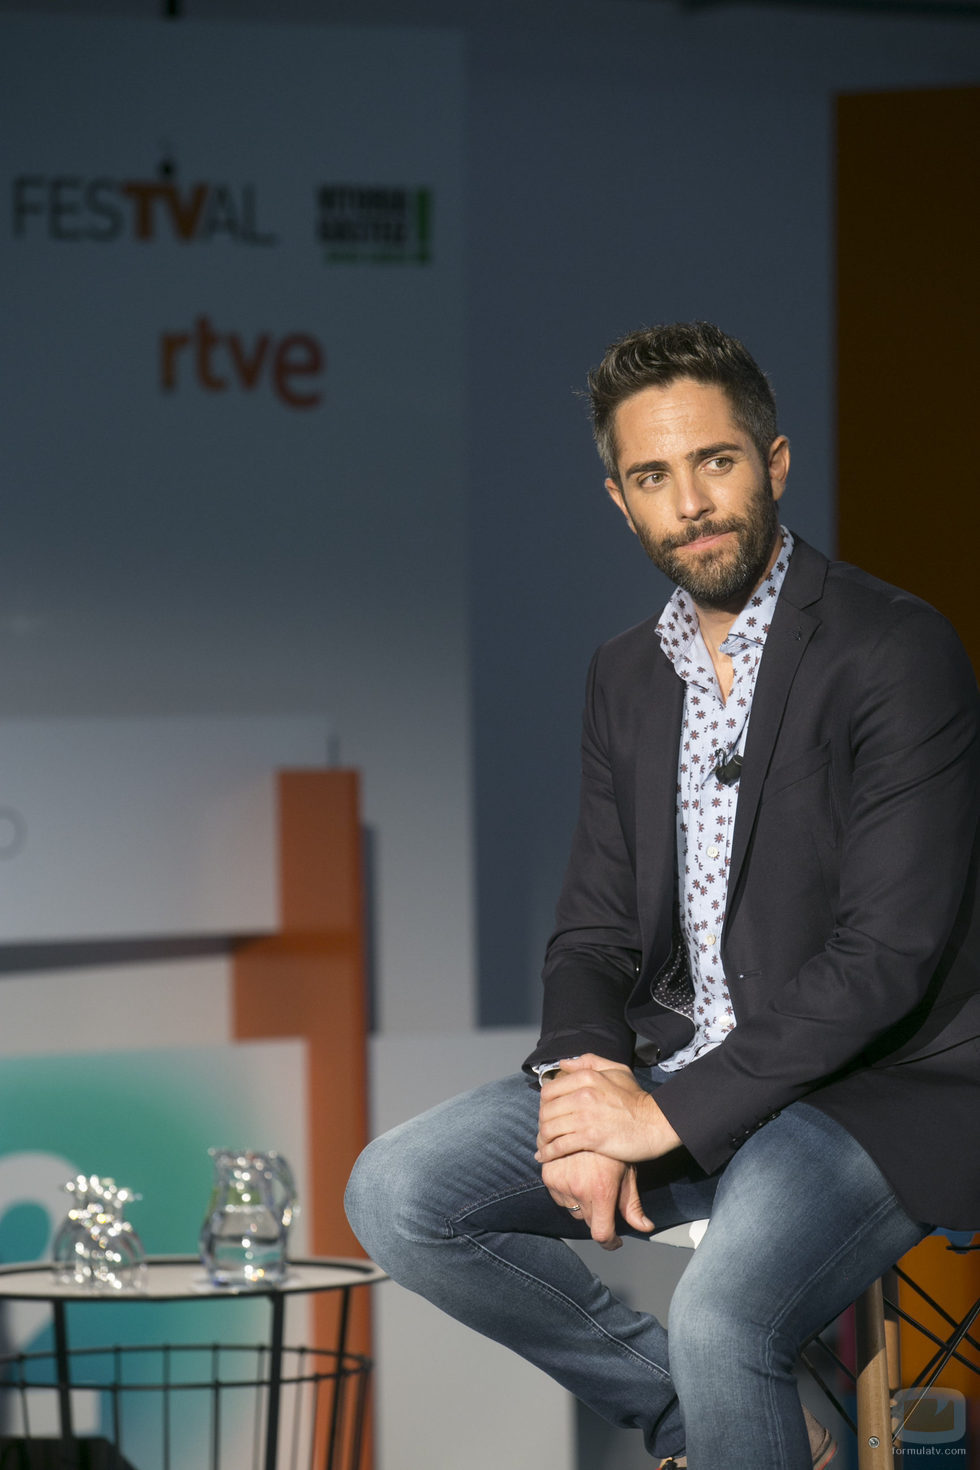 Roberto Leal sentado en la presentación de 'OT 2017' en el FesTVal